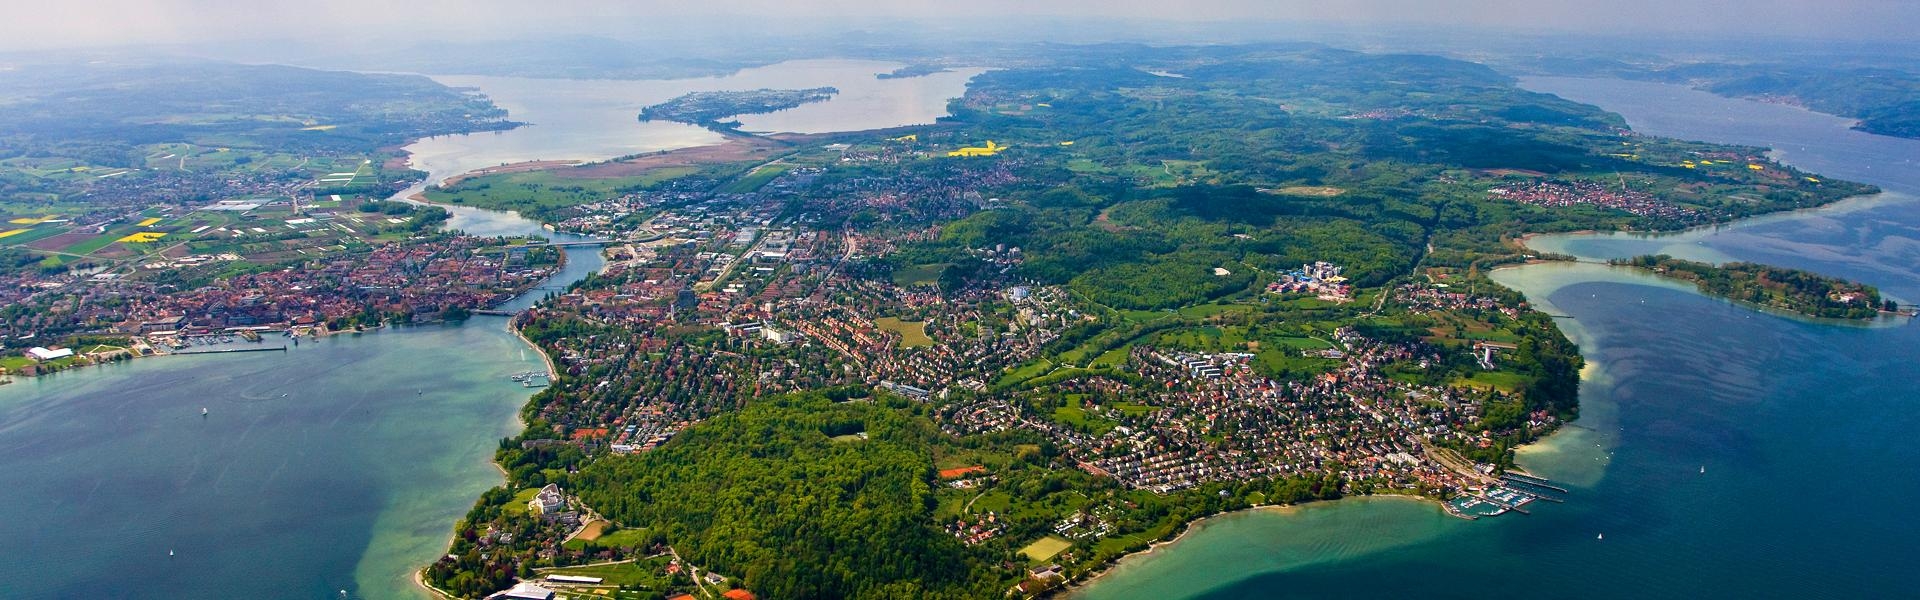 Luftaufnahme mit Blick auf den Landkreis von Konstanz aus